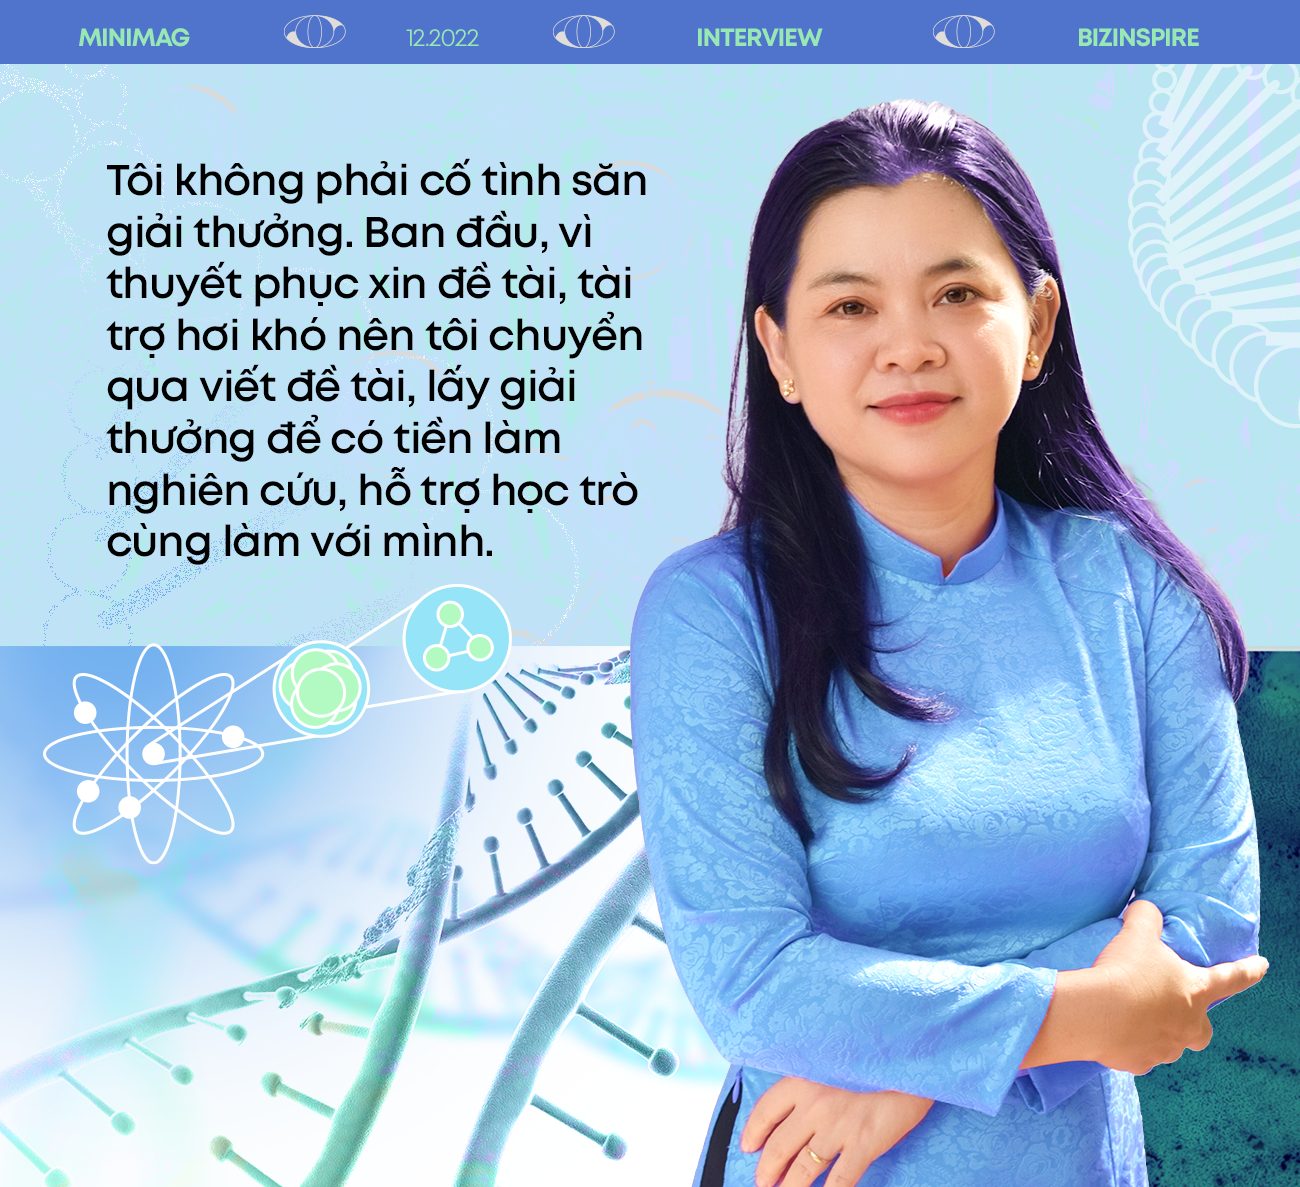 PGS.TS Nguyễn Thị Hiệp – nữ hoàng săn giải thưởng khoa học nhưng chưa từng hài lòng với công trình nghiên cứu nào của bản thân - Ảnh 3.